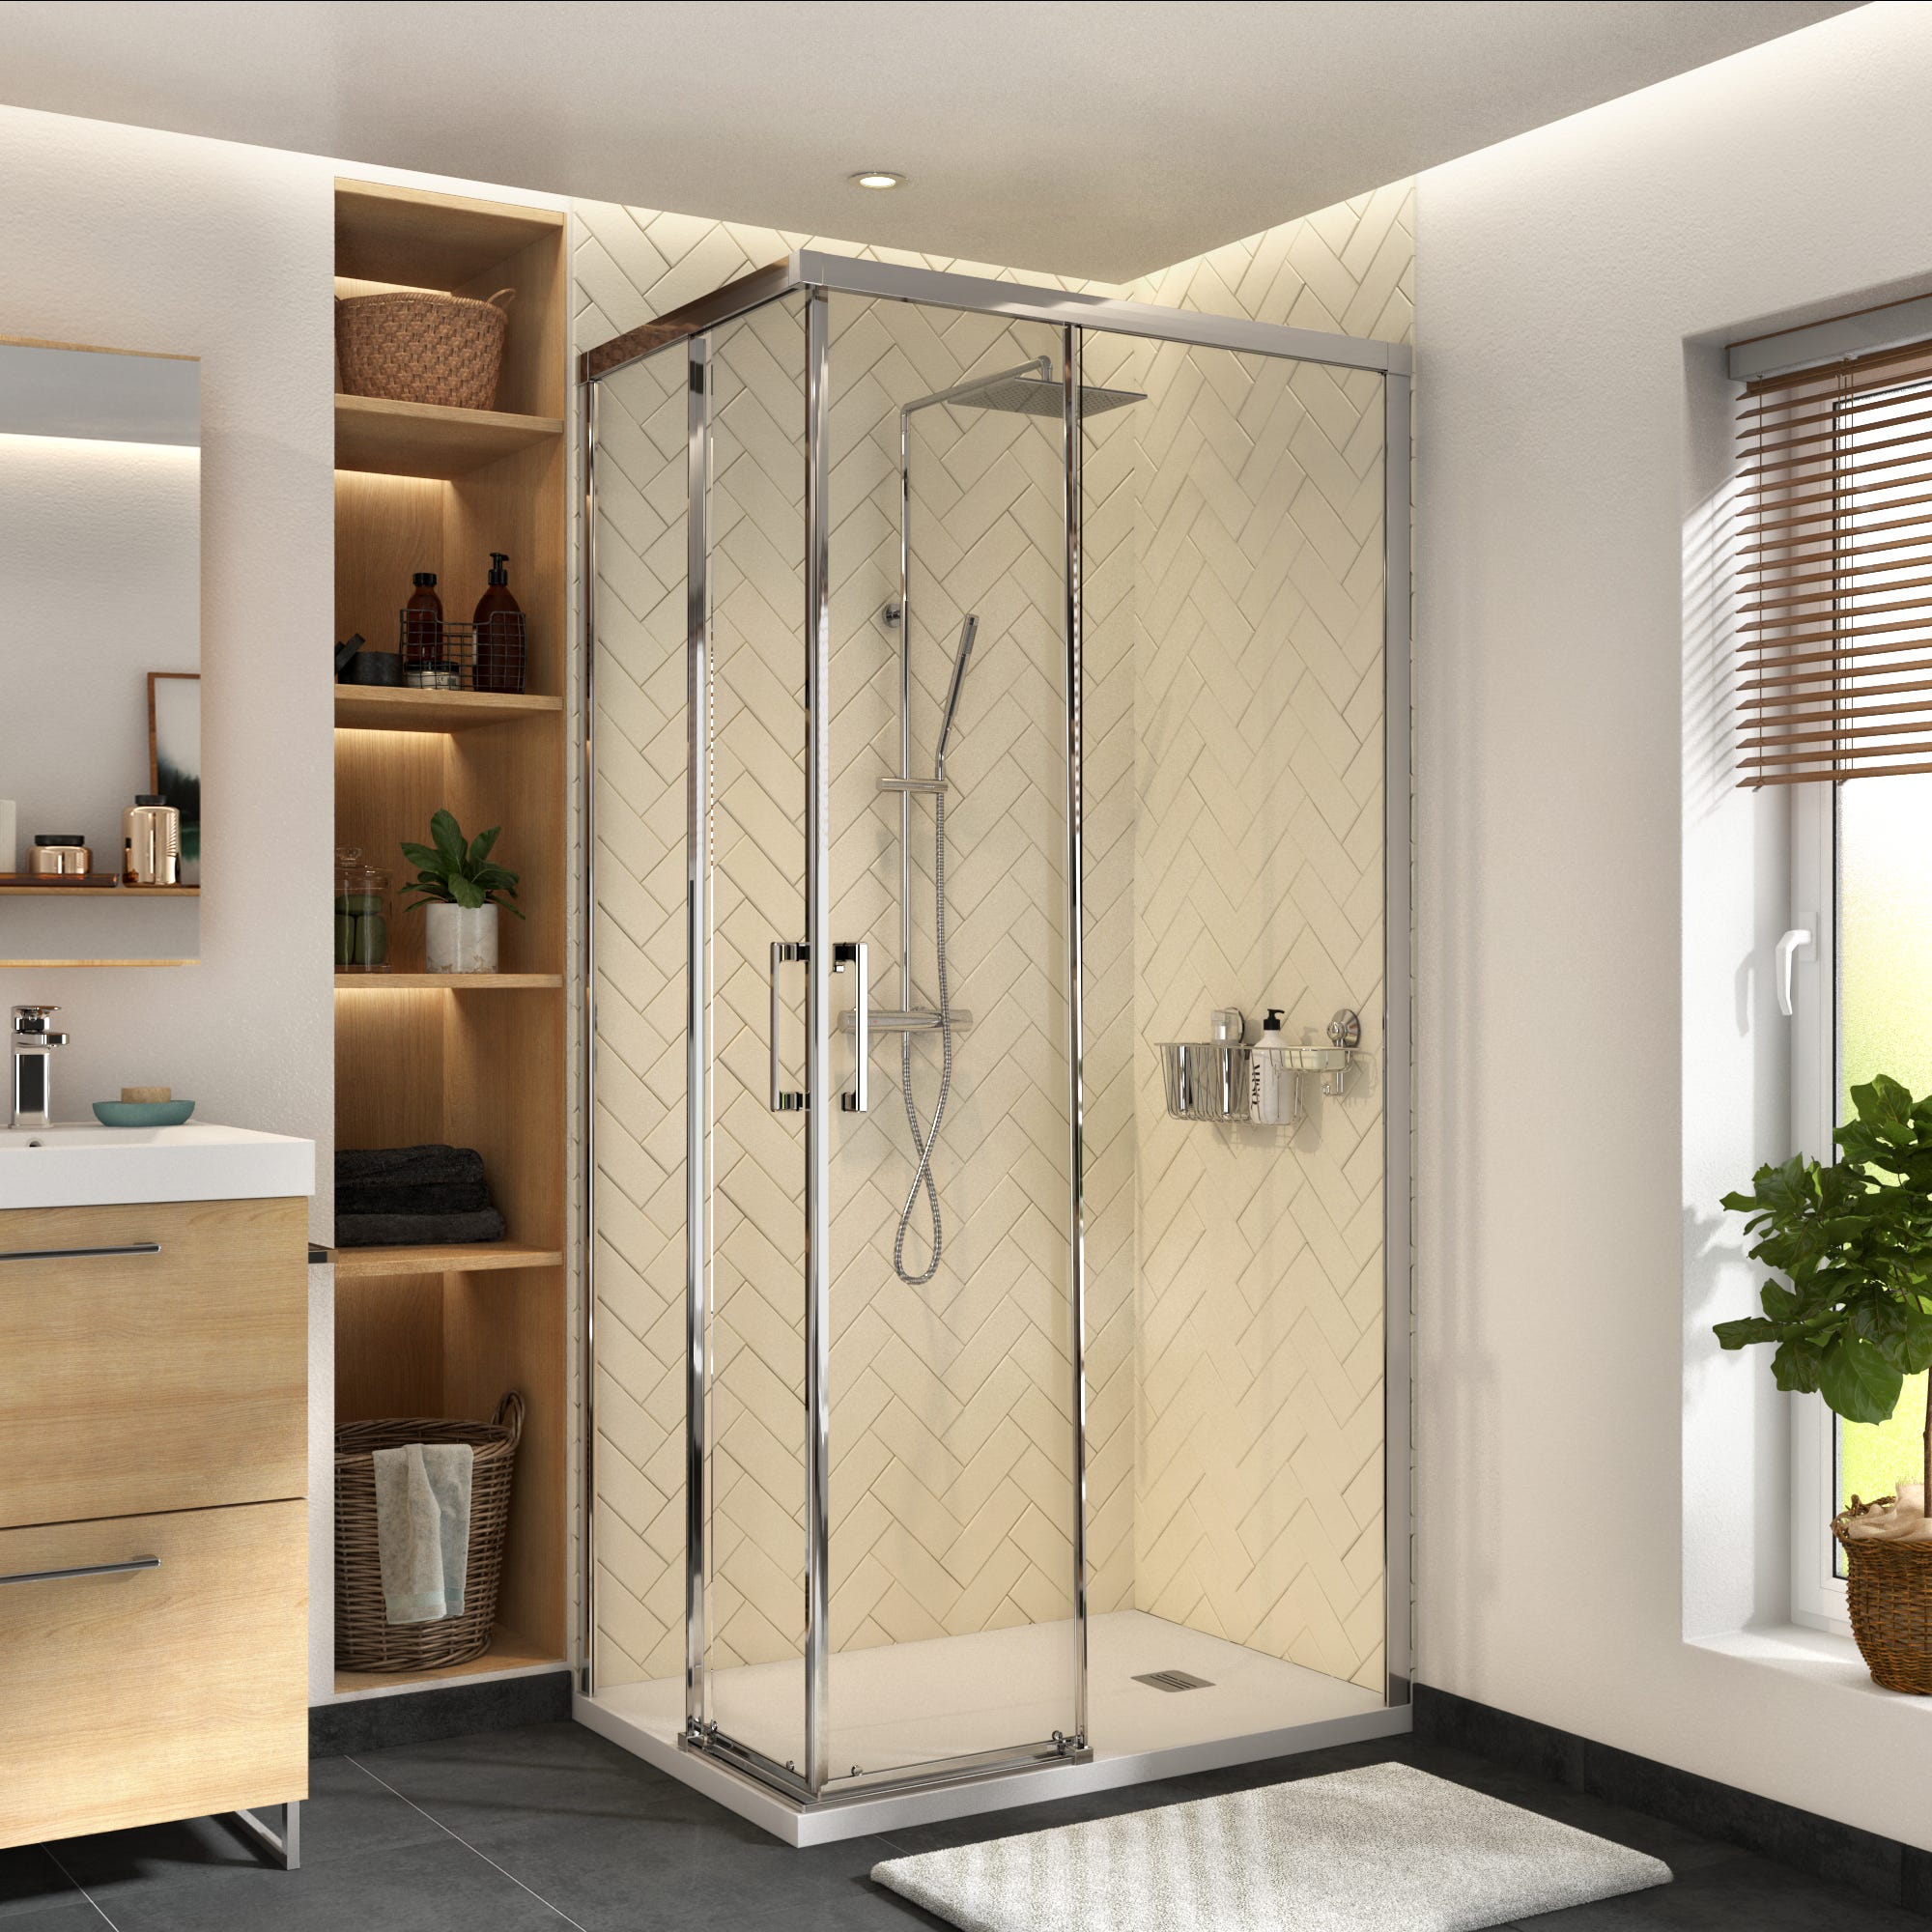 Joint d'étanchéité bas horizontal pour portes de douche, 100 cm,  transparent pour verre 5 mm